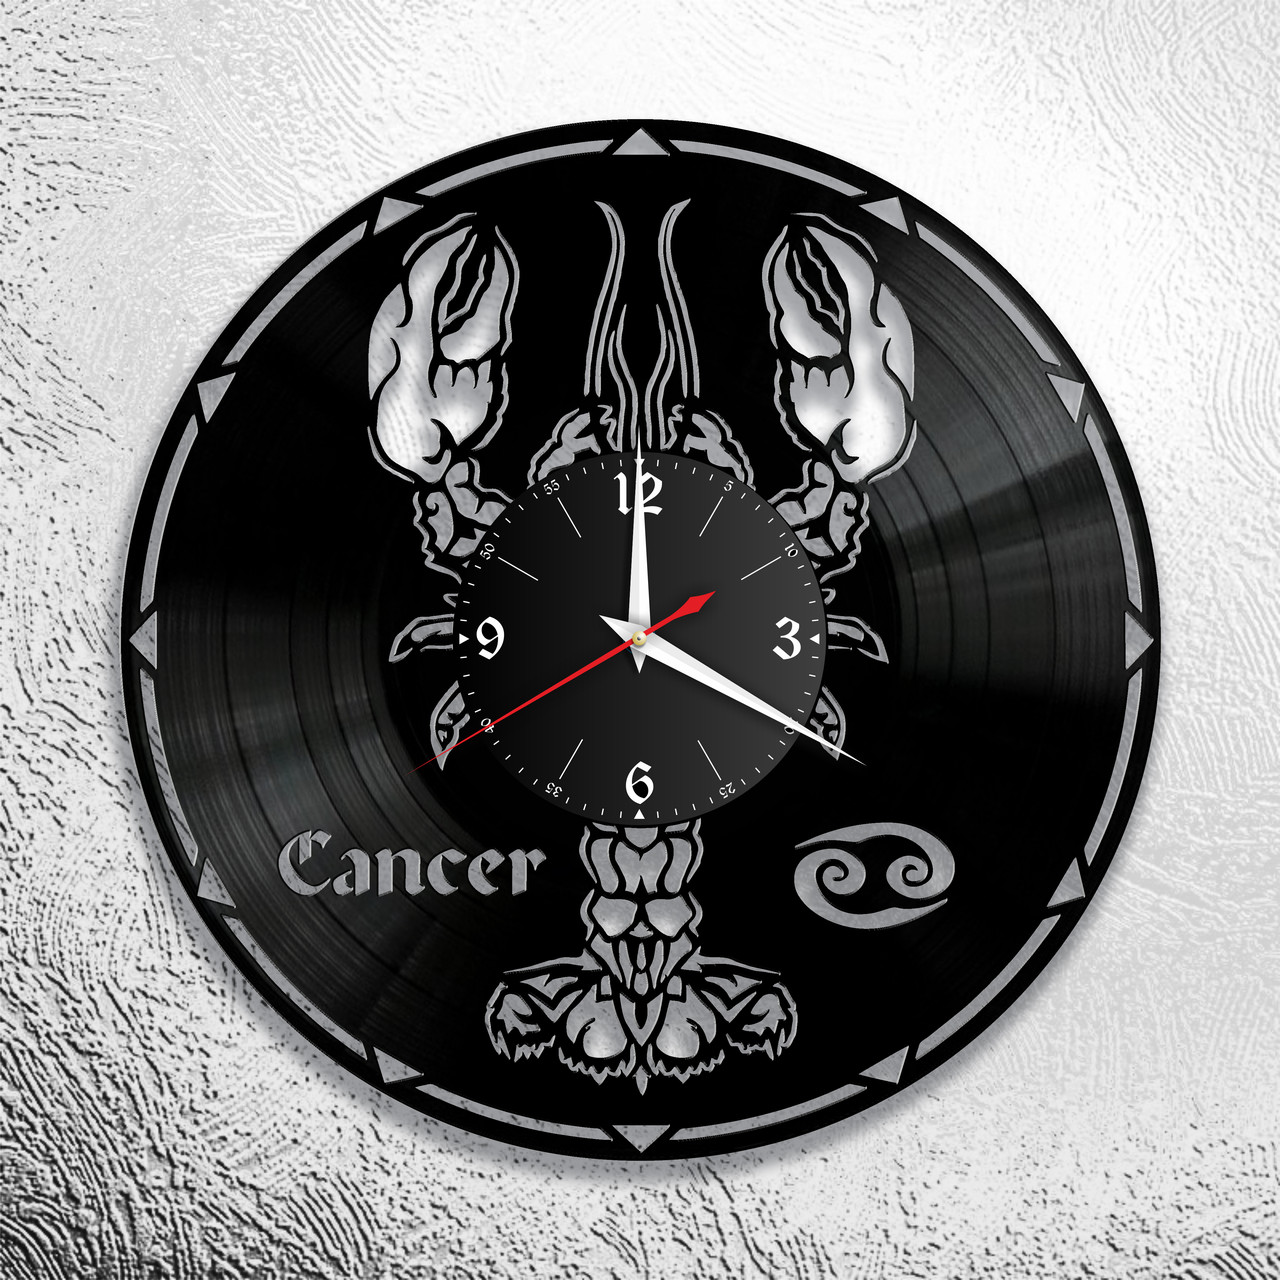 Оригинальные часы из виниловых пластинок  "Знаки Зодиака "  версия 4 Рак, фото 1